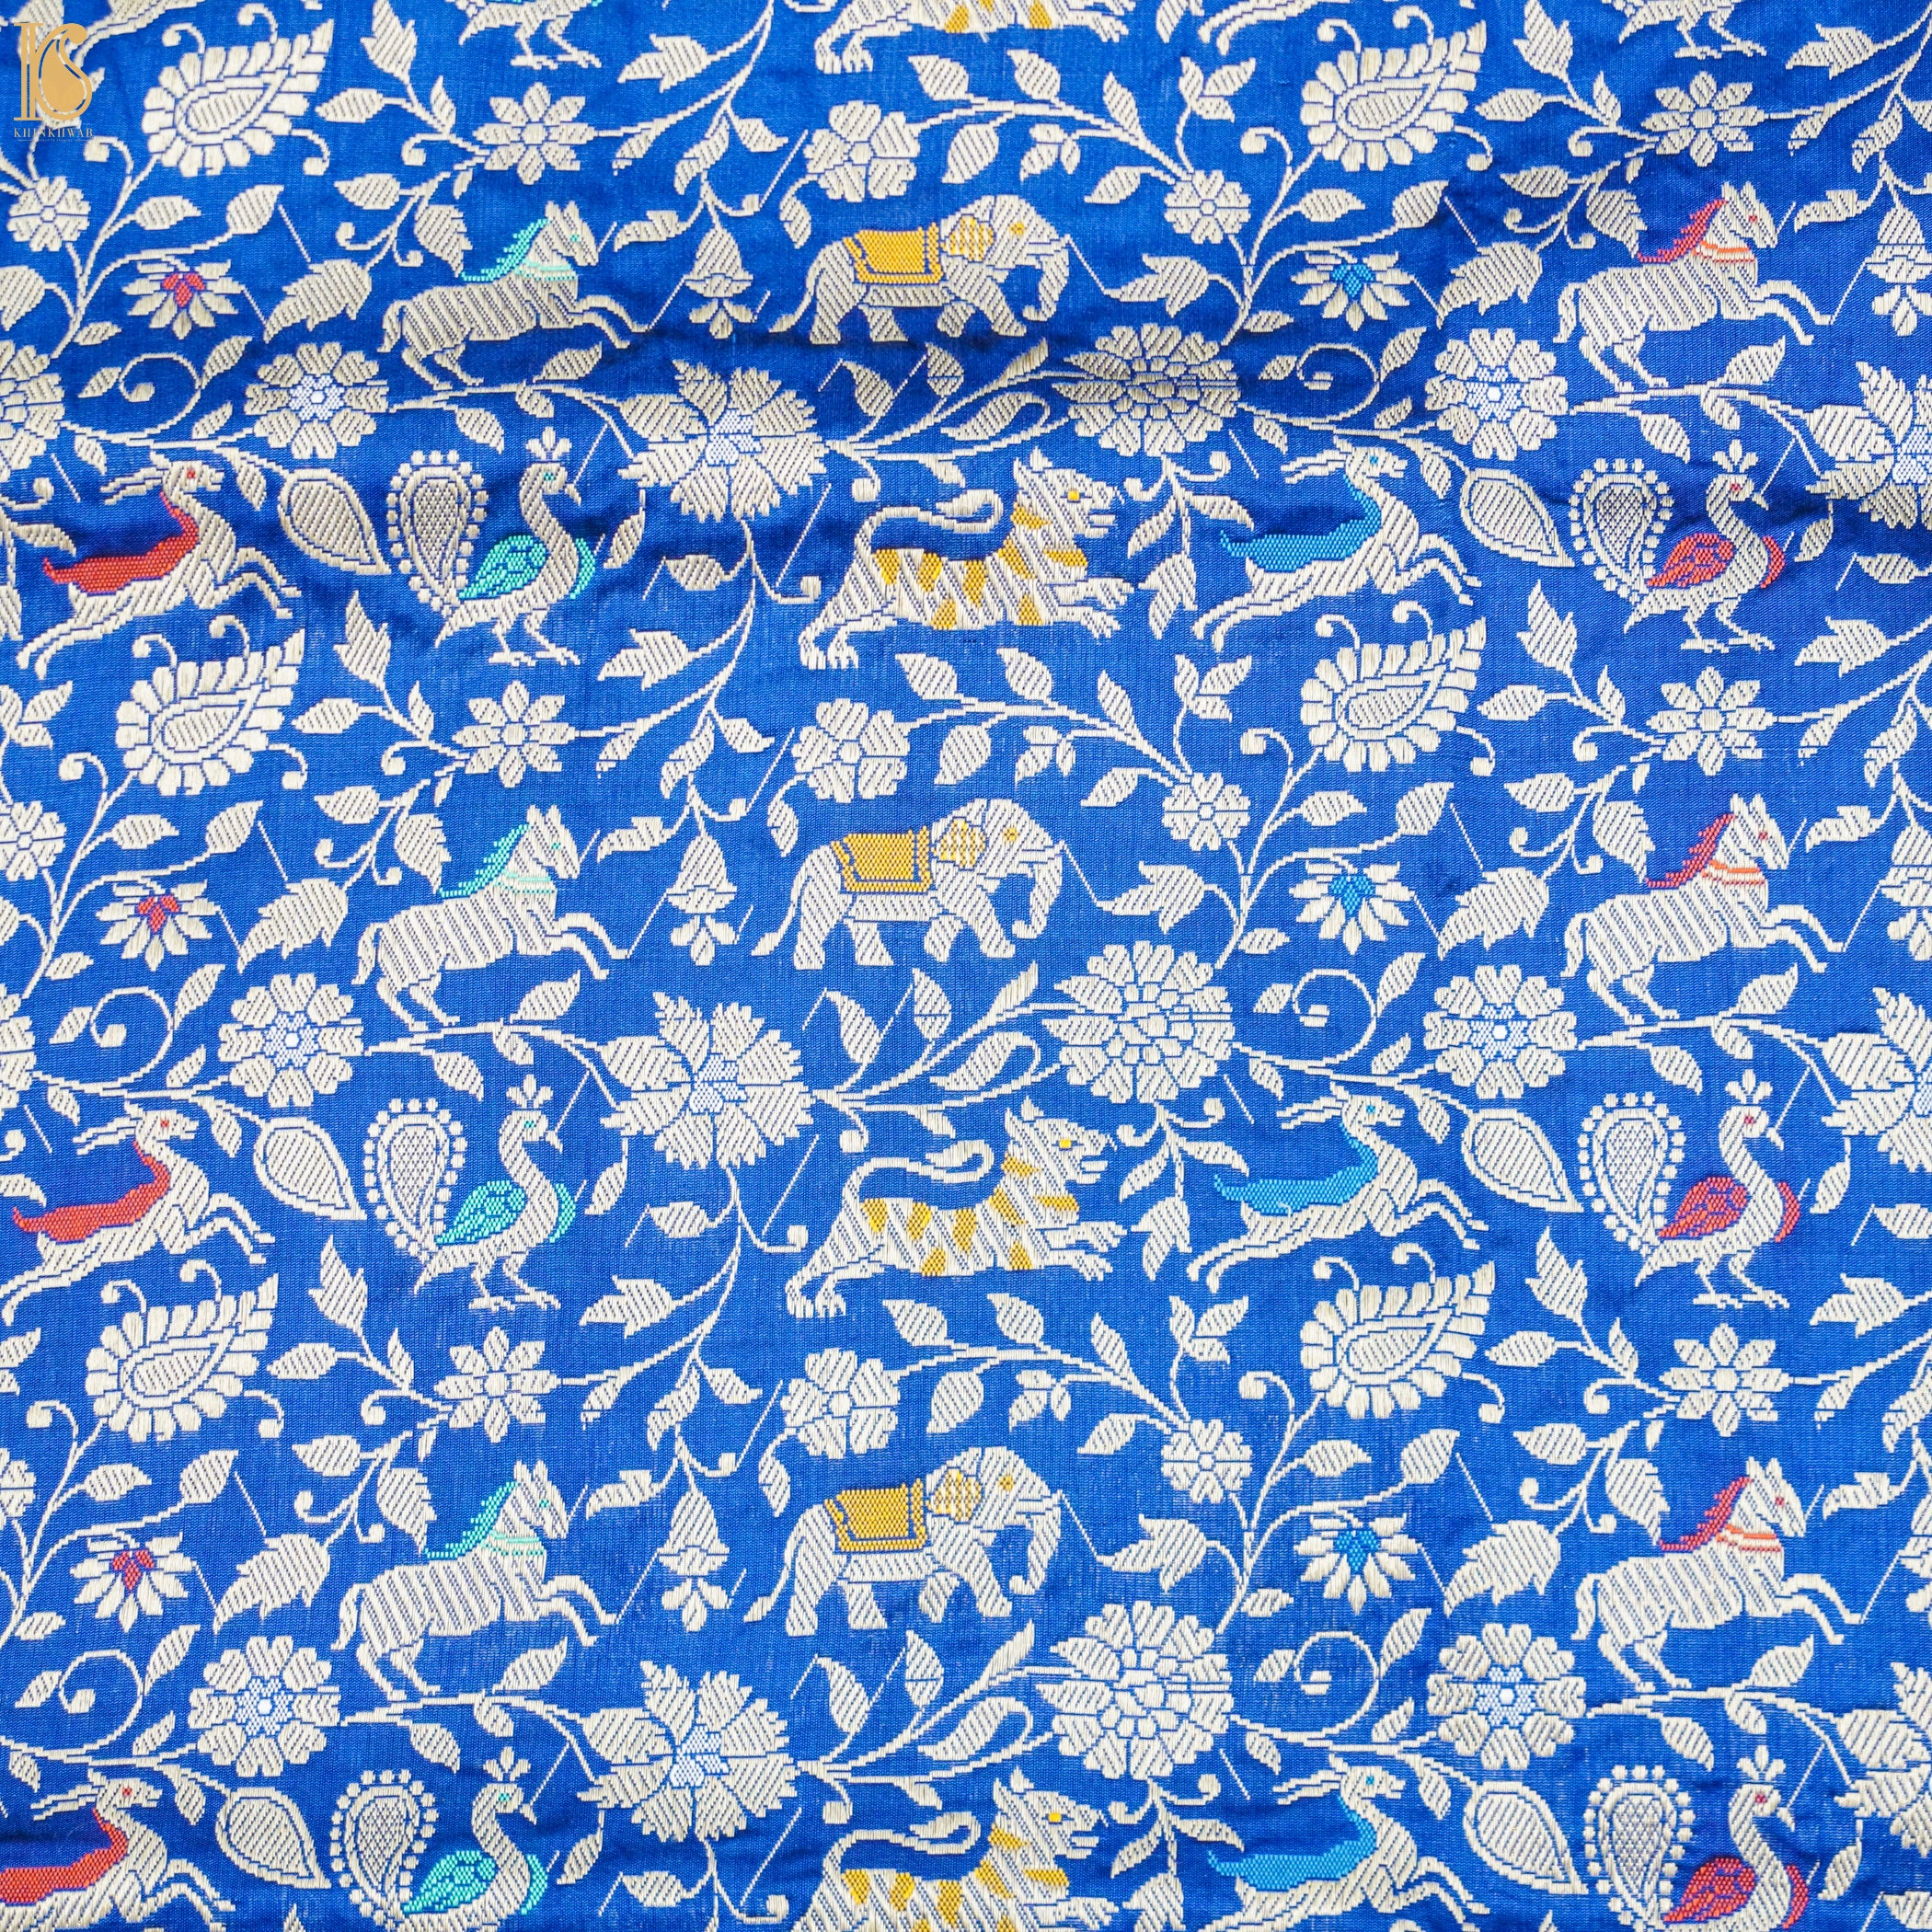 Handwoven Royal Blue Pure Katan Silk Banarasi Shikargah Fabric - Khinkhwab